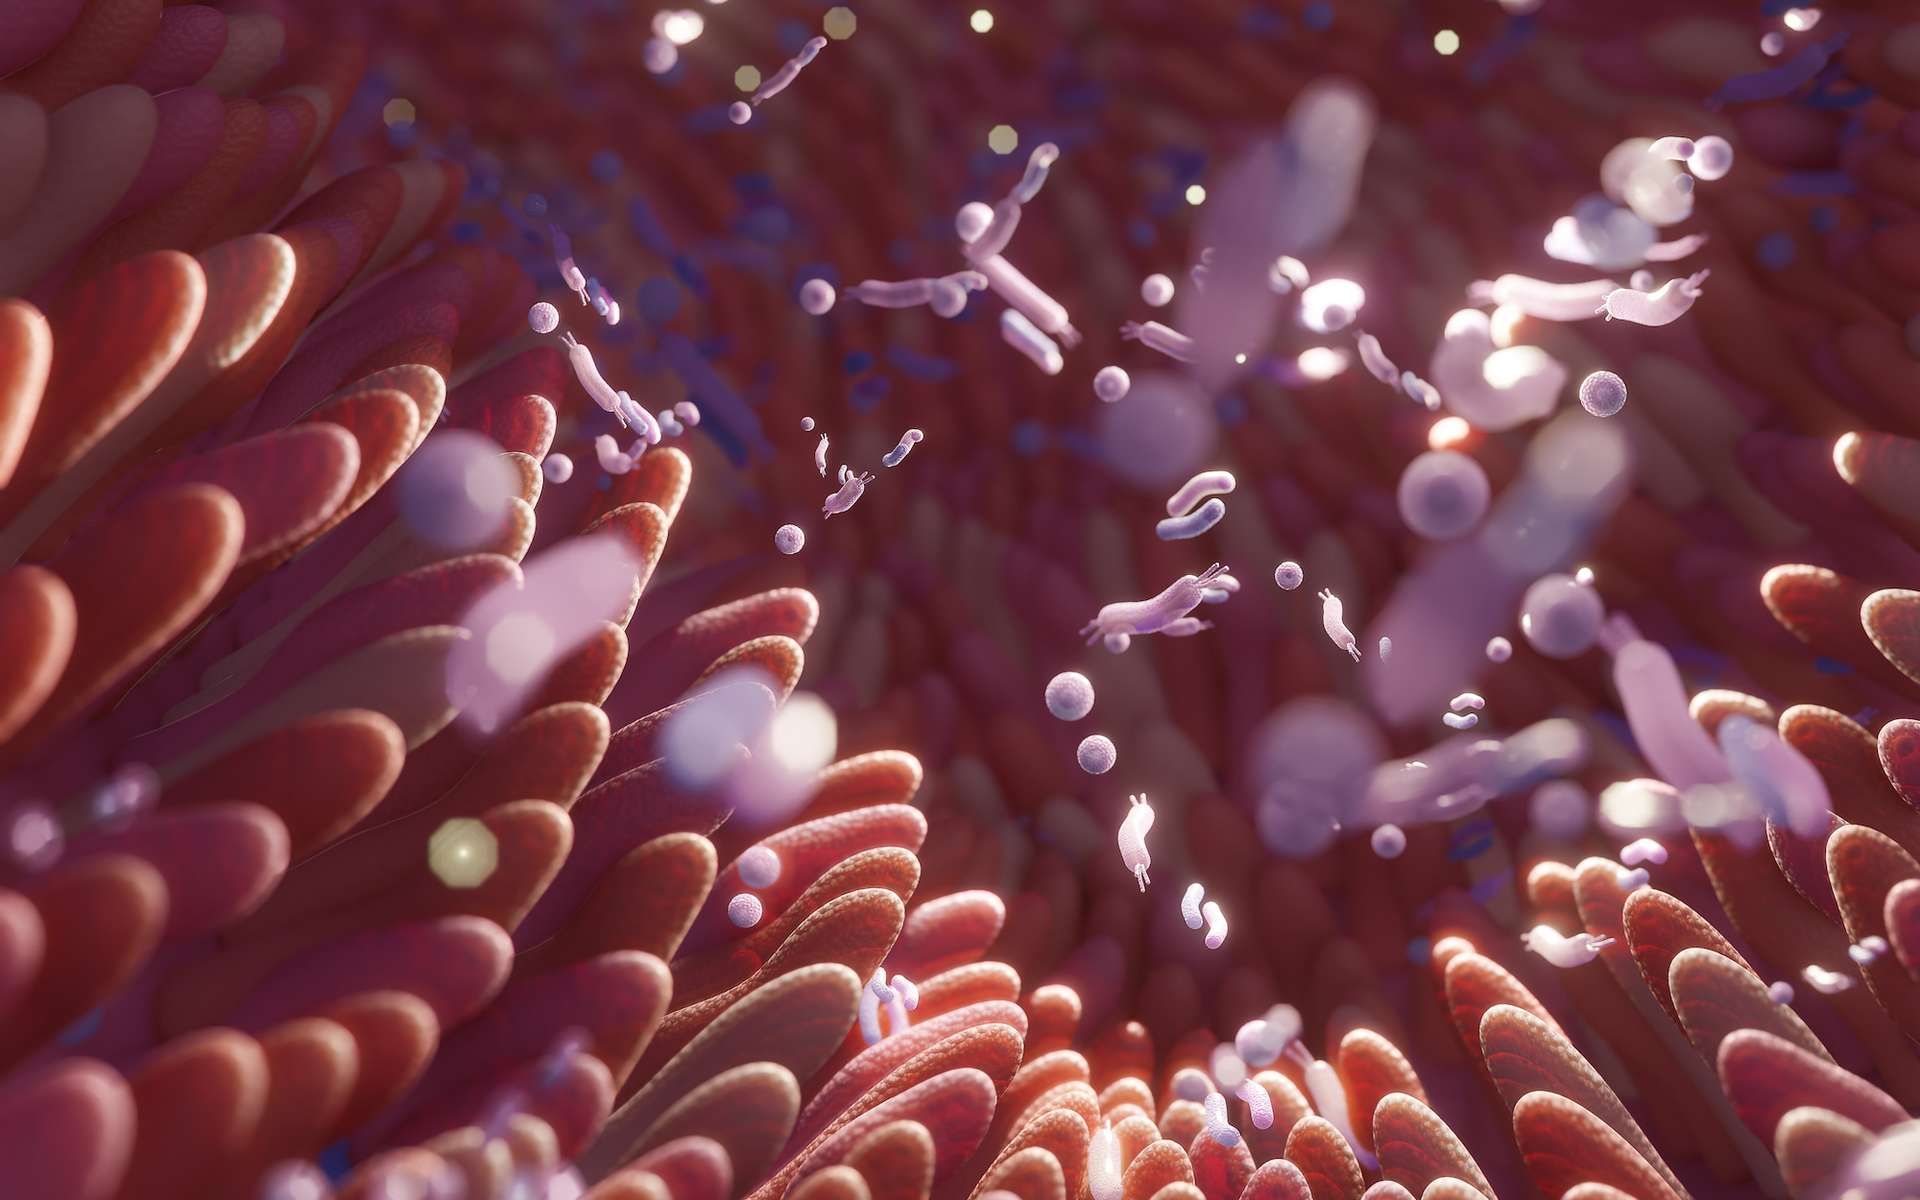 Le langage secret du microbiome : percée majeure dans la compréhension des acides biliaires